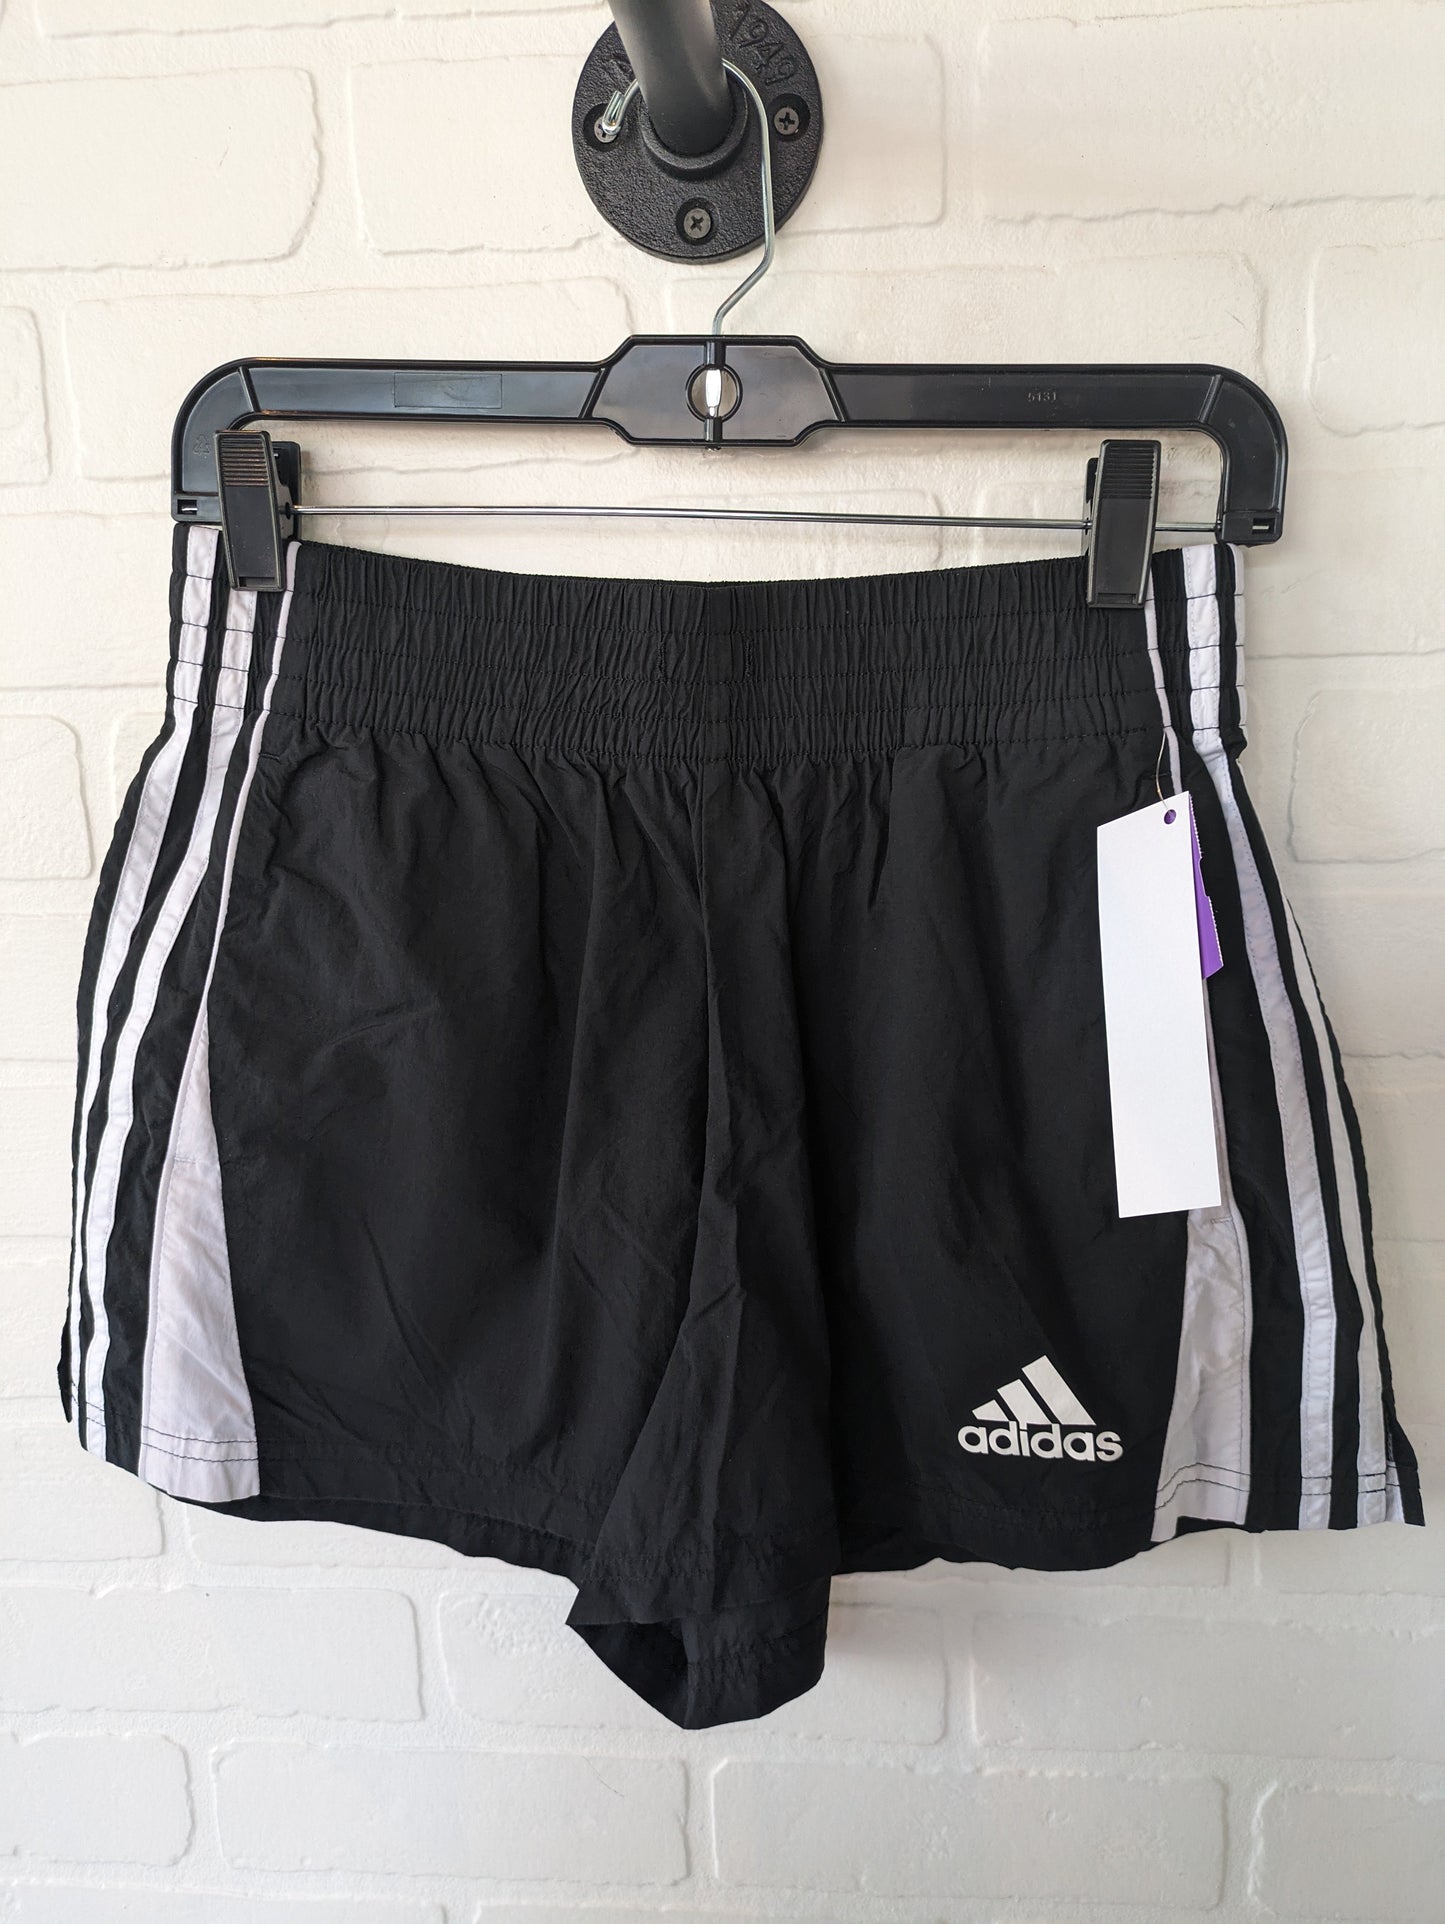 Black Athletic Shorts Adidas, Size 4